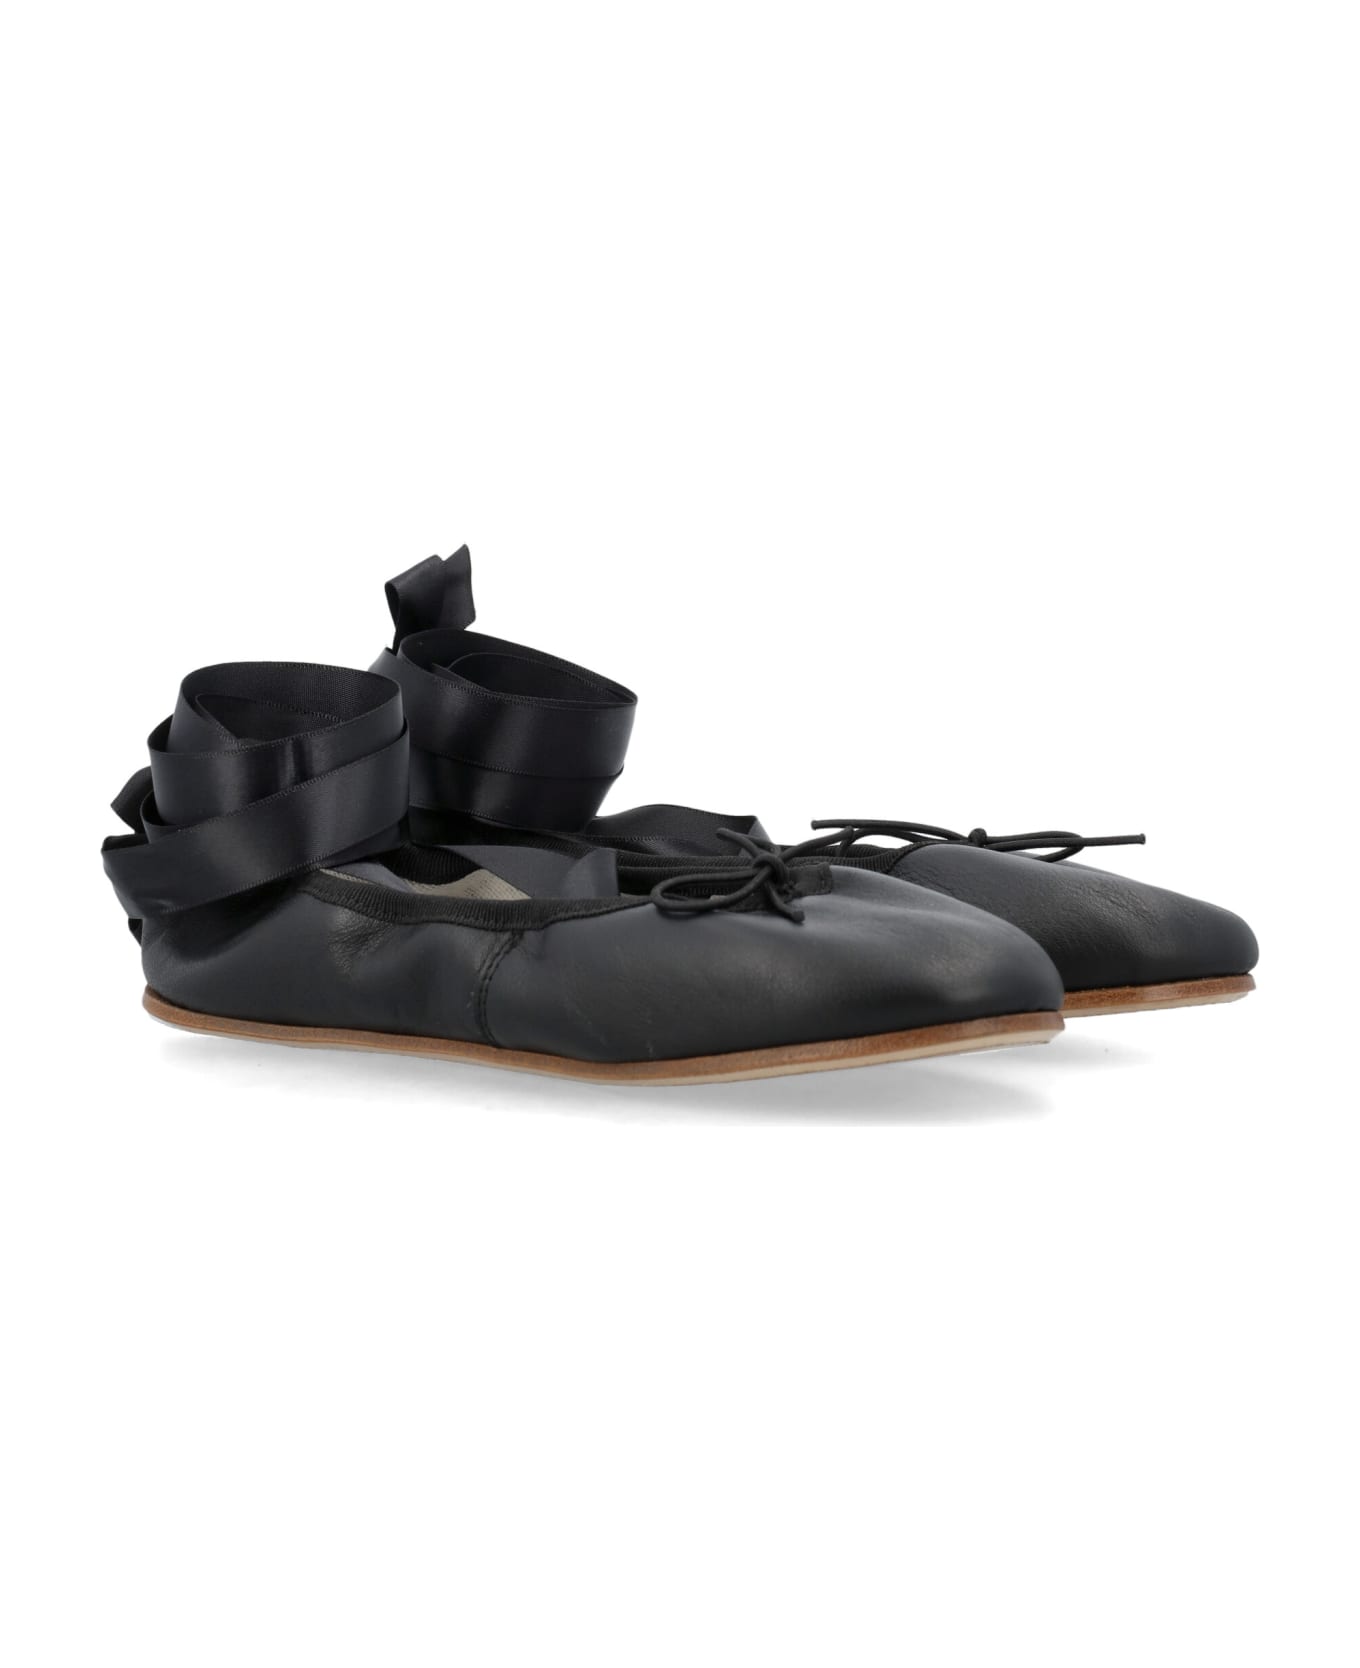 Repetto Sophia Ballerina Shoes - Black フラットシューズ